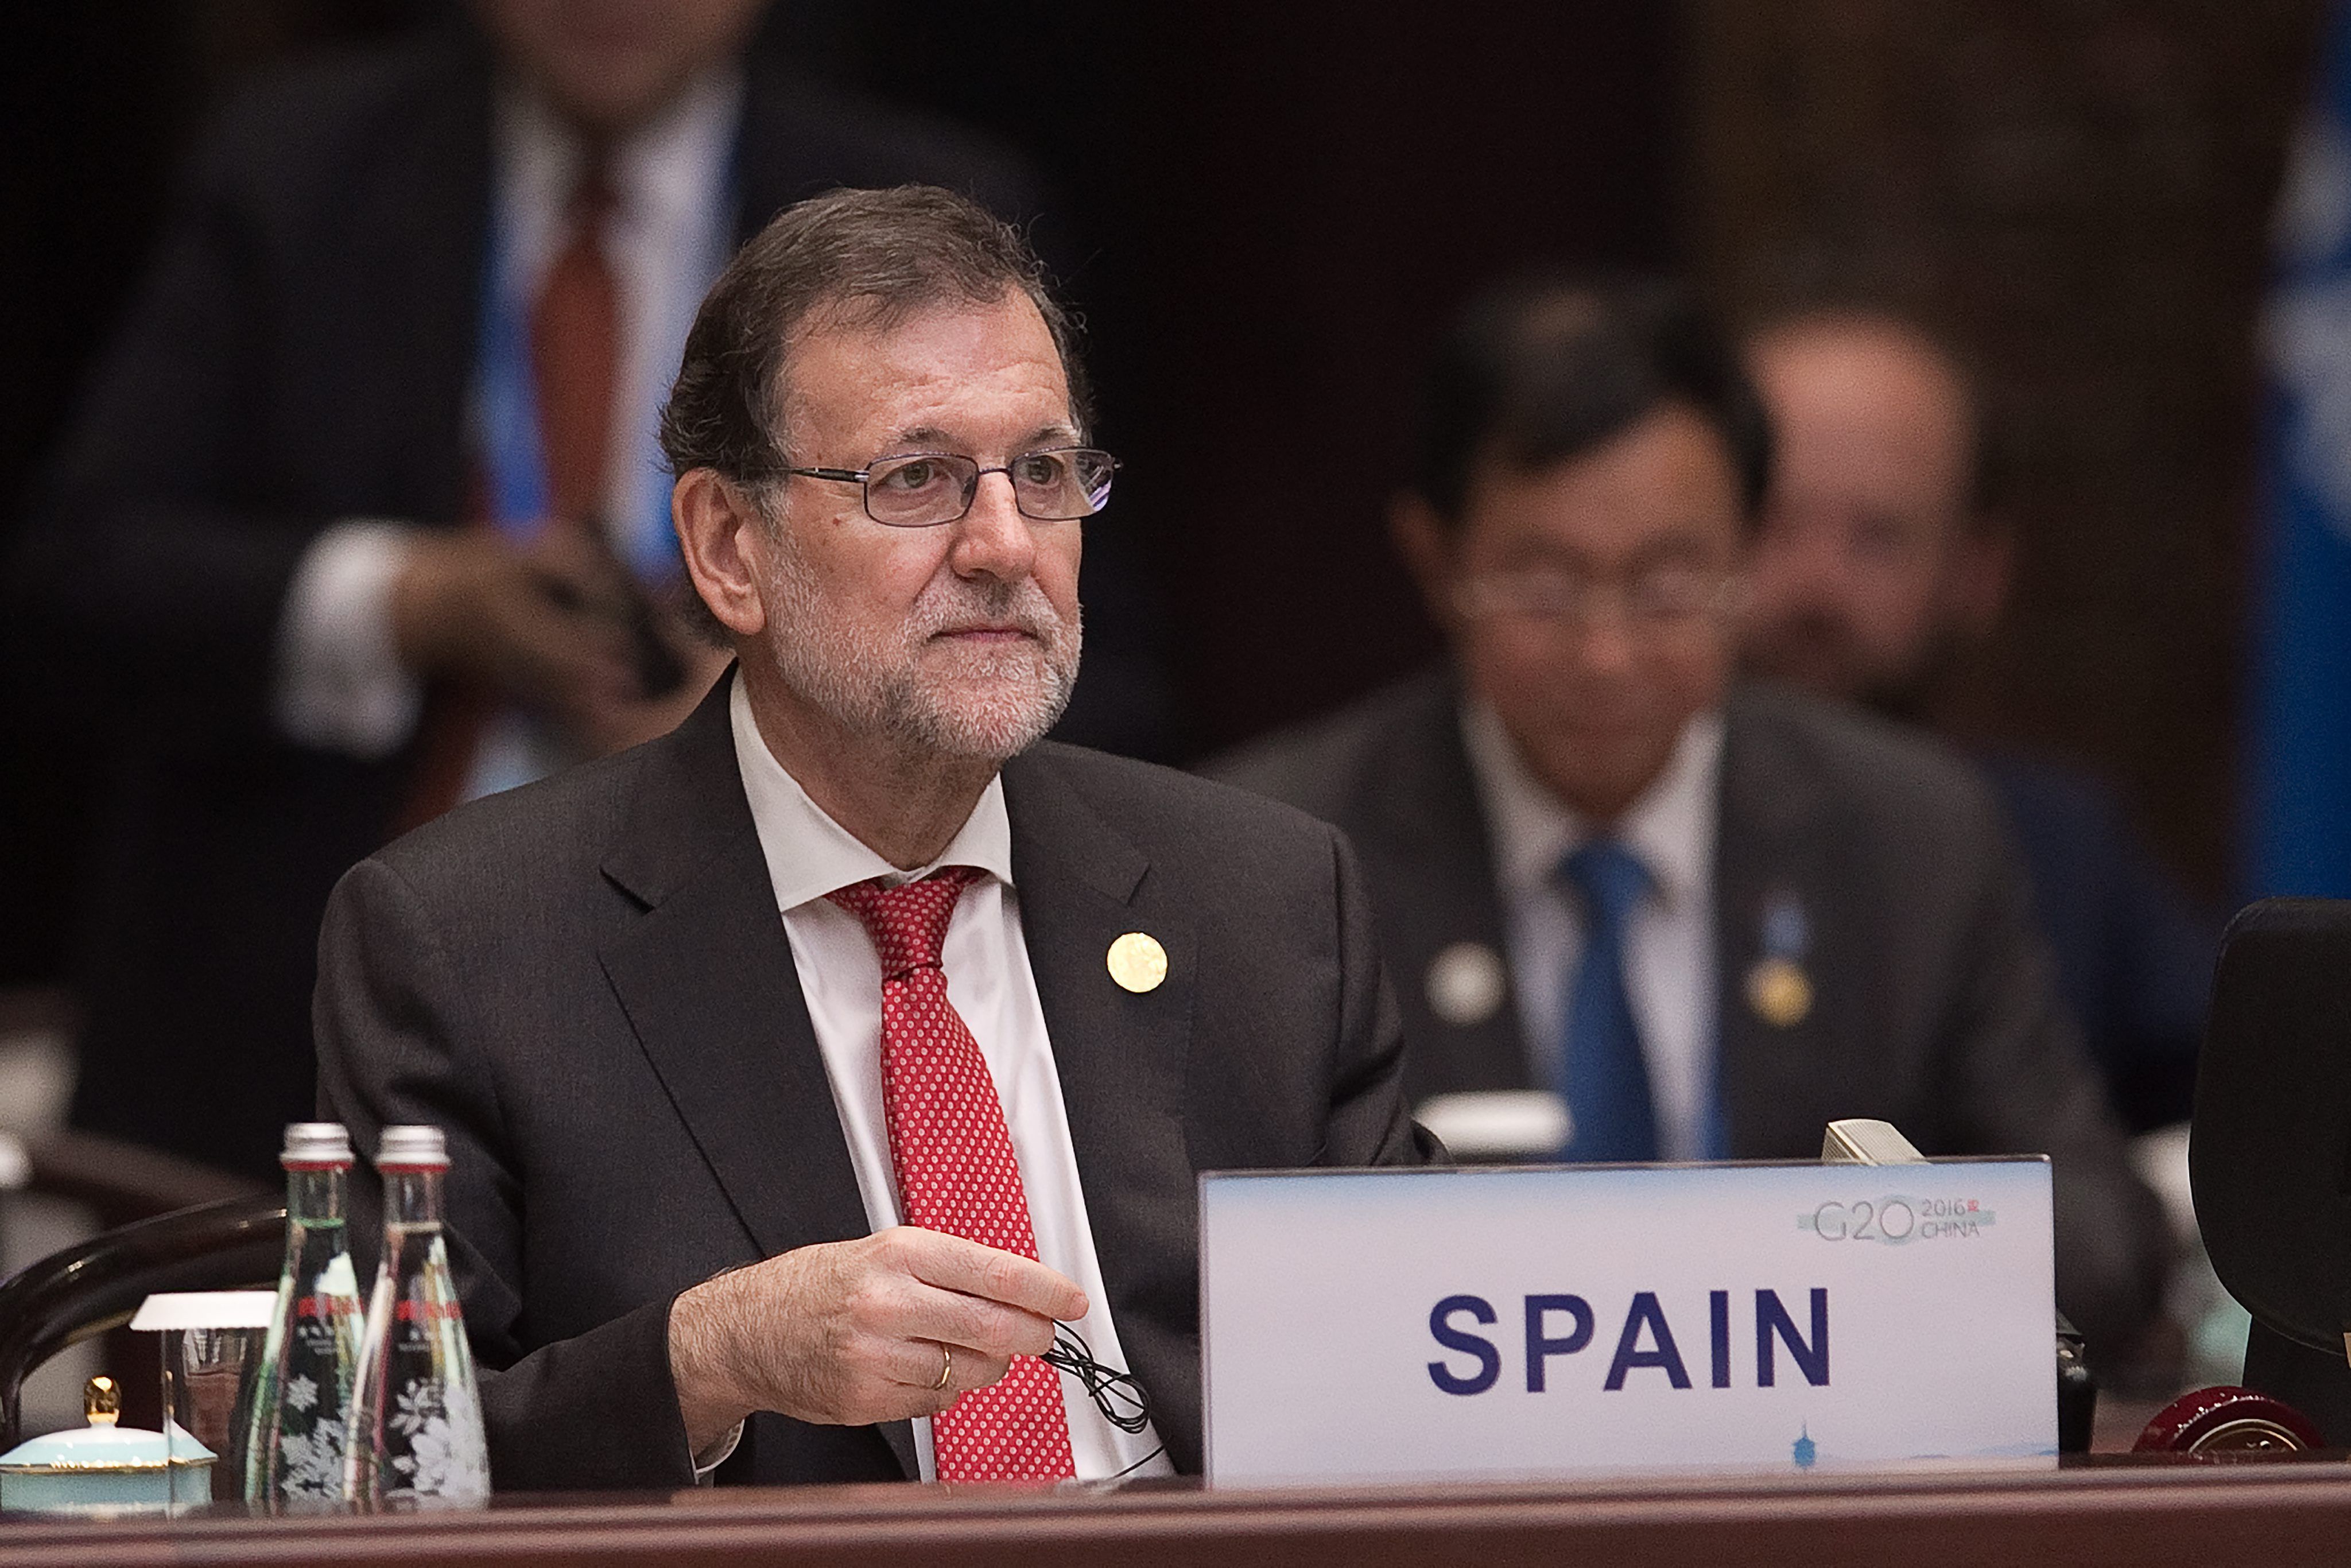 Rajoy reitera el seu suport a la candidatura de Soria per al Banc Mundial